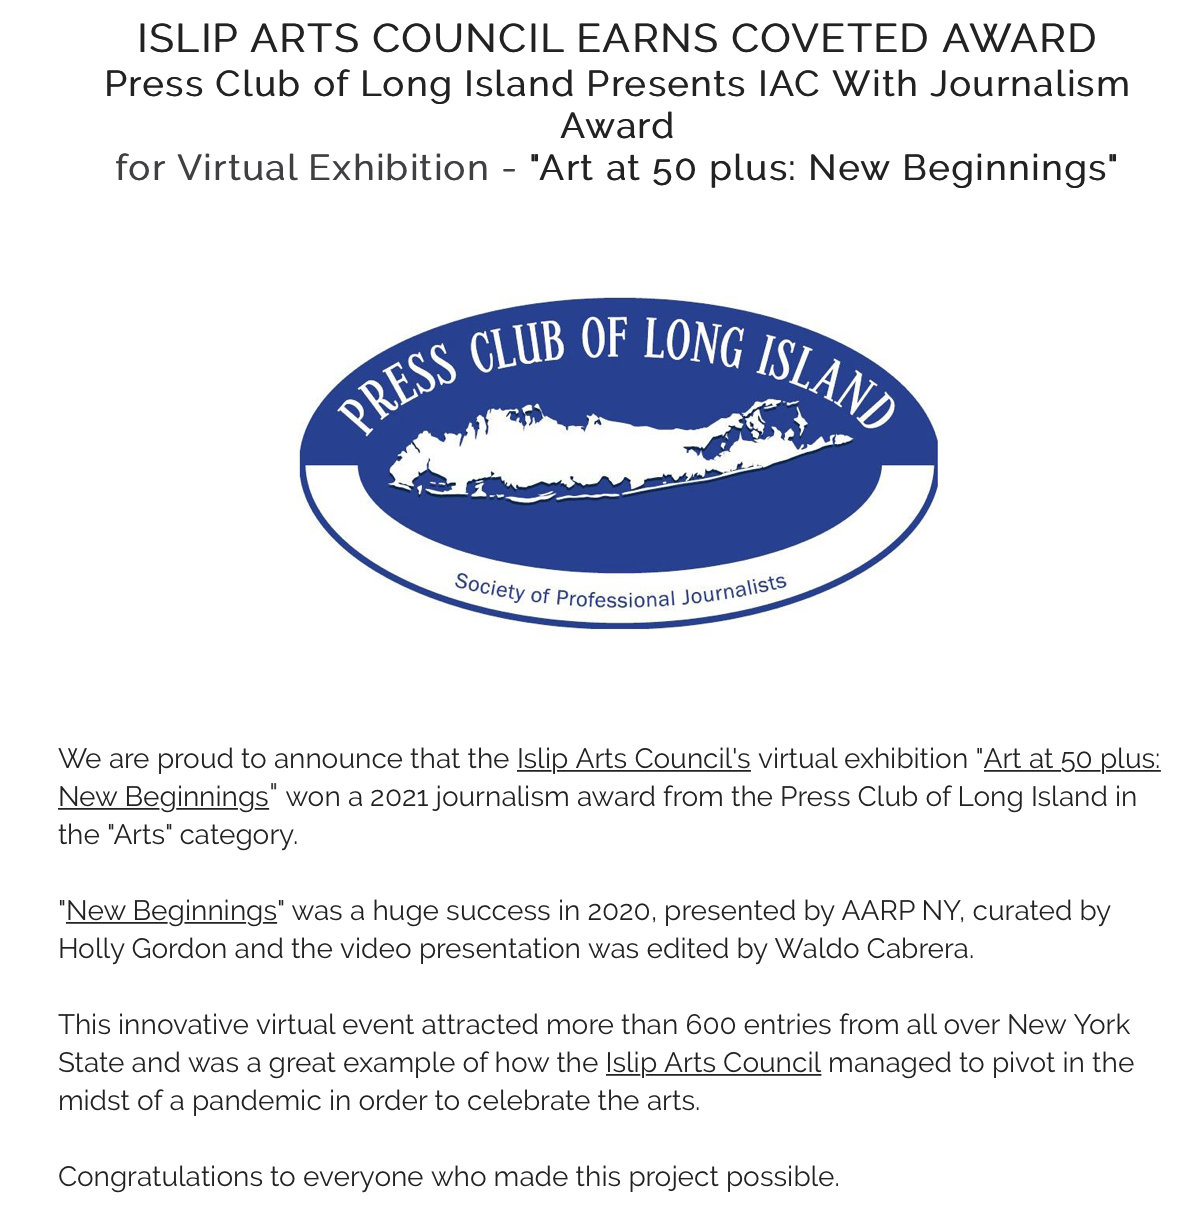 JULY 2021 / IAC Earns LI Press Club Award